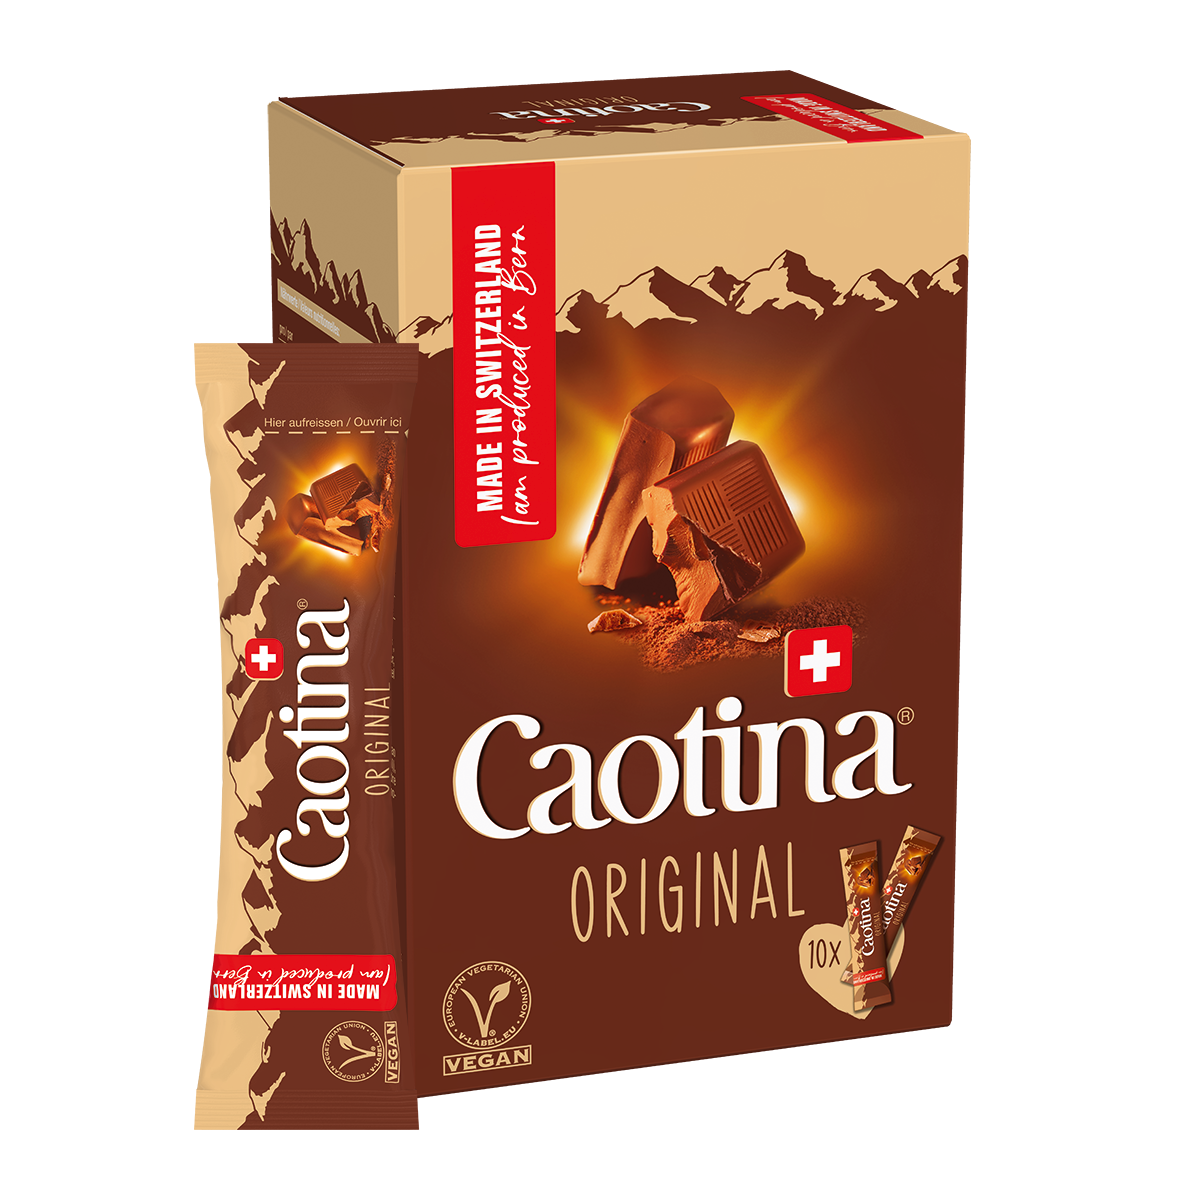  petits sachets pleins de plaisir chocolaté – les Caotina Original Sticks